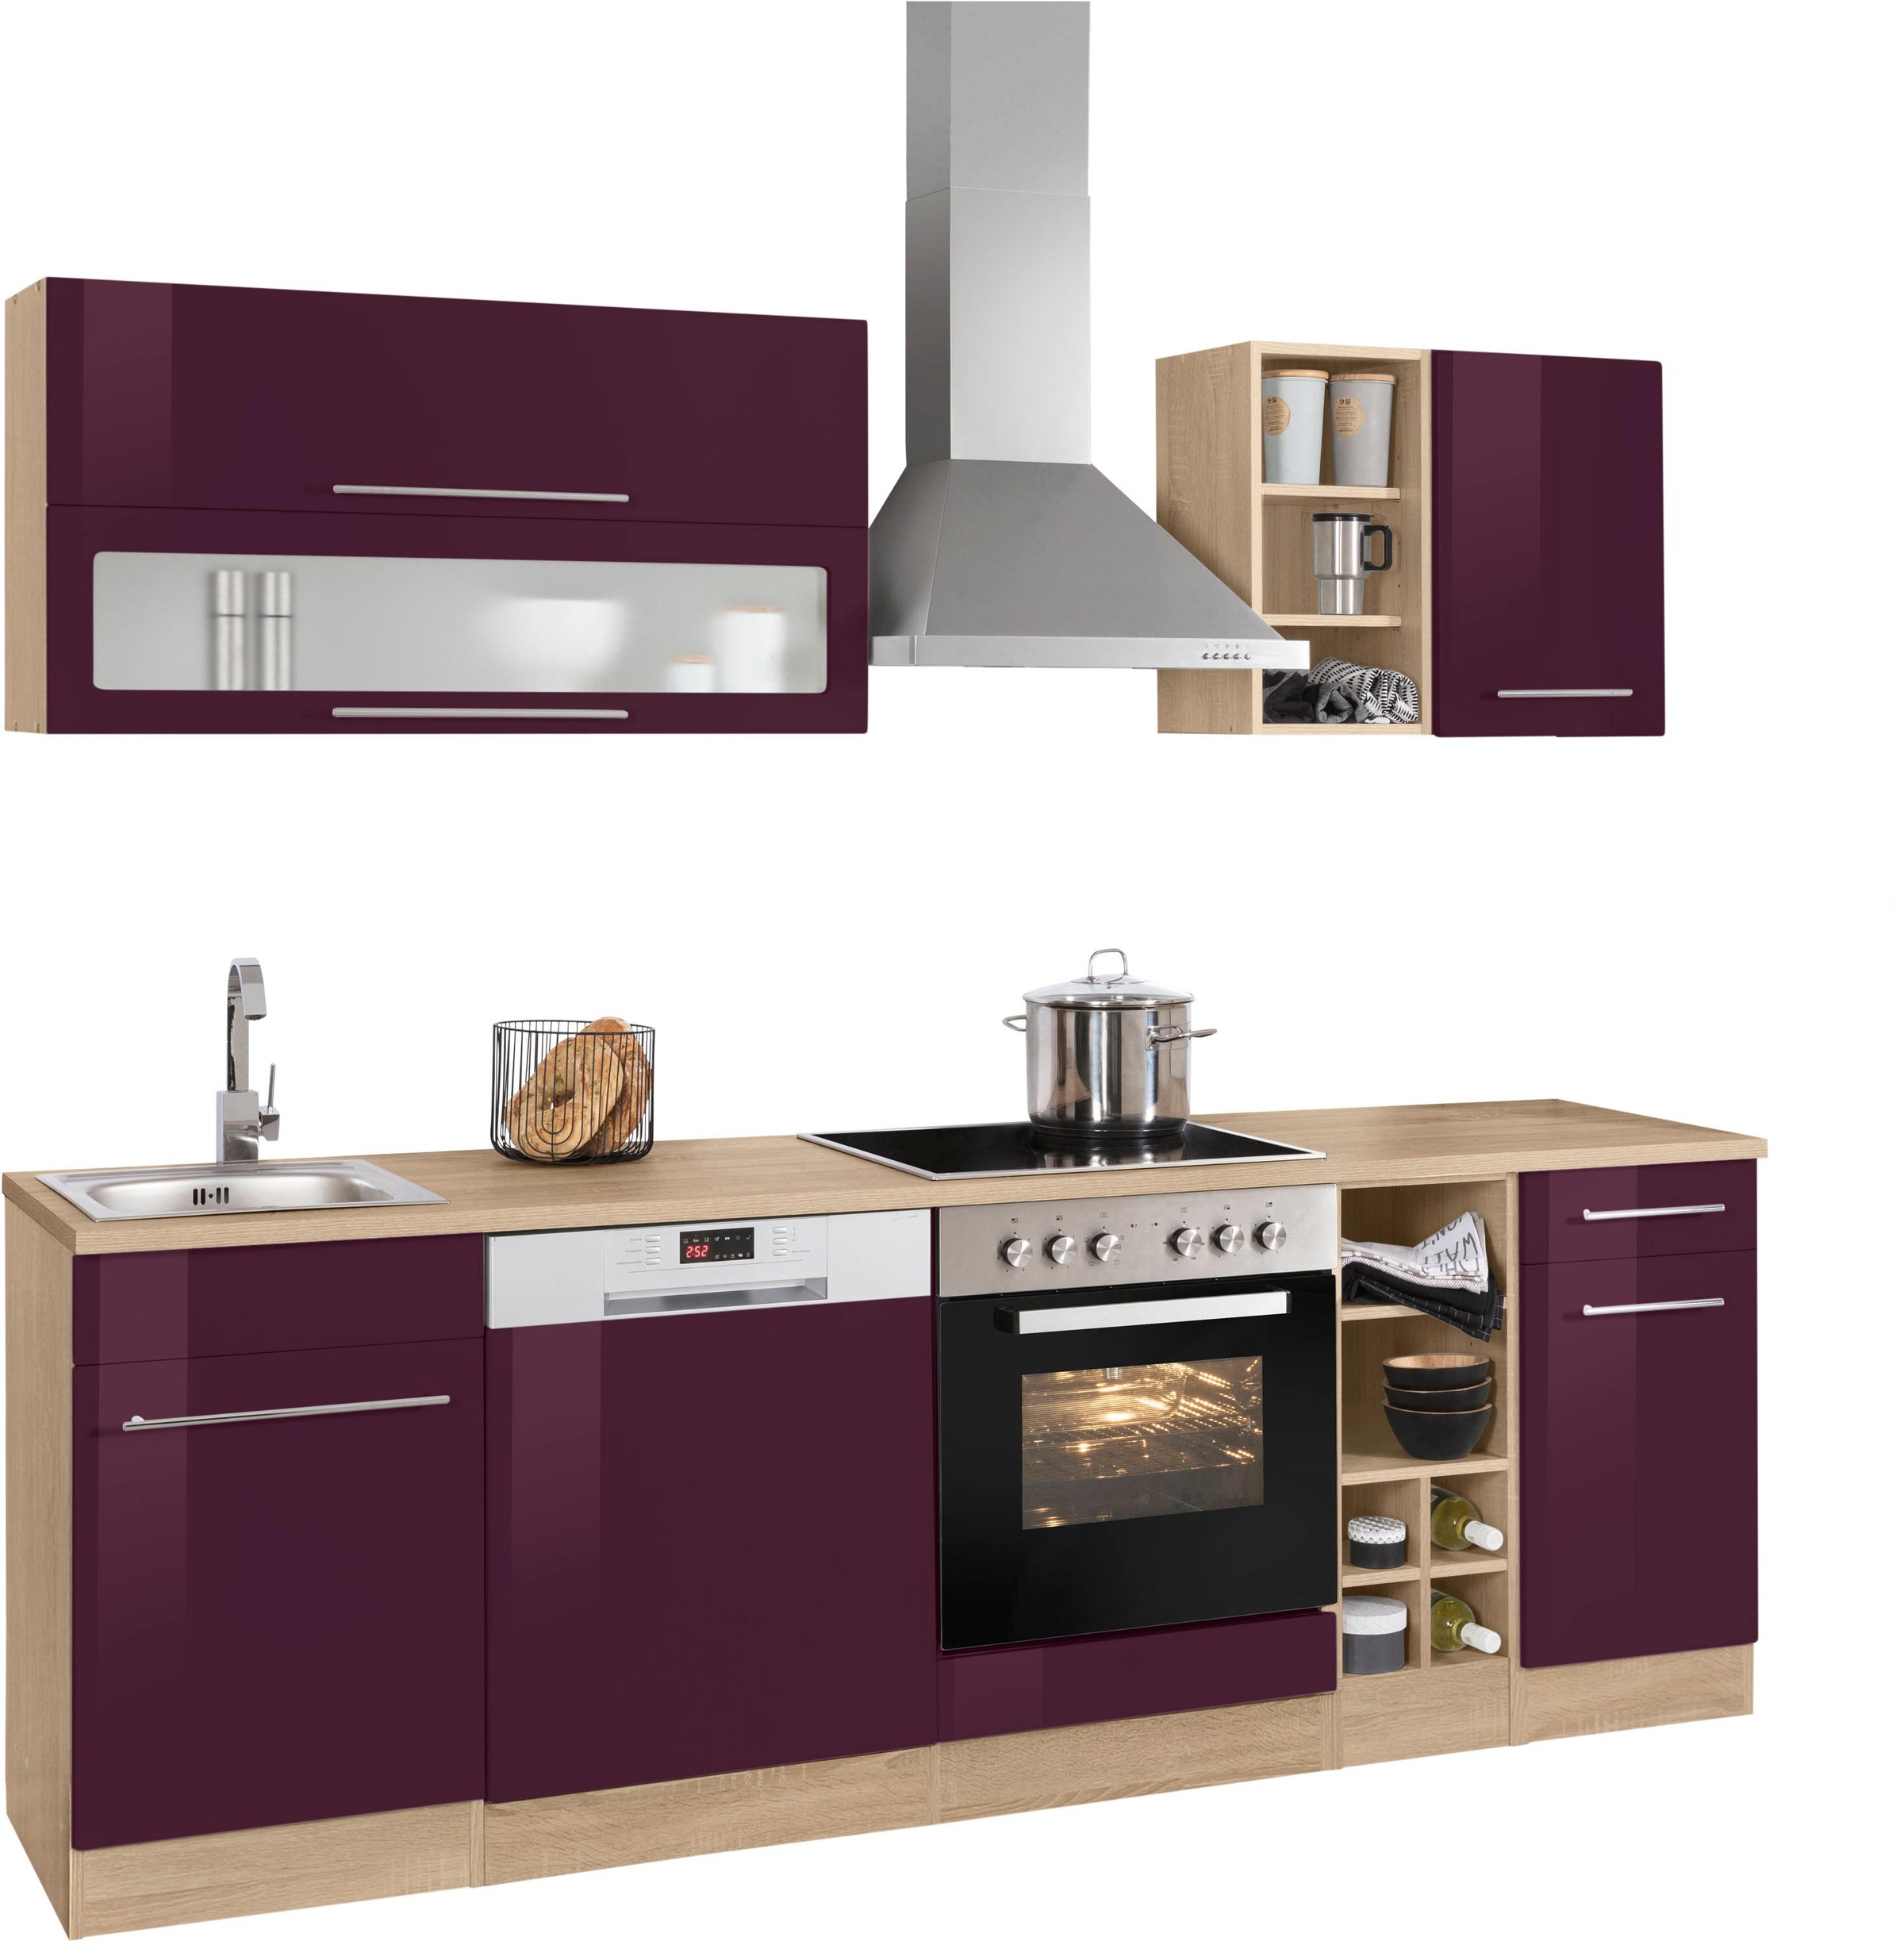 Featured image of post Küchenzeile Mit Geräten 240 Cm - Zur wahl steht der küchenblock in attraktiven farbvarianten.